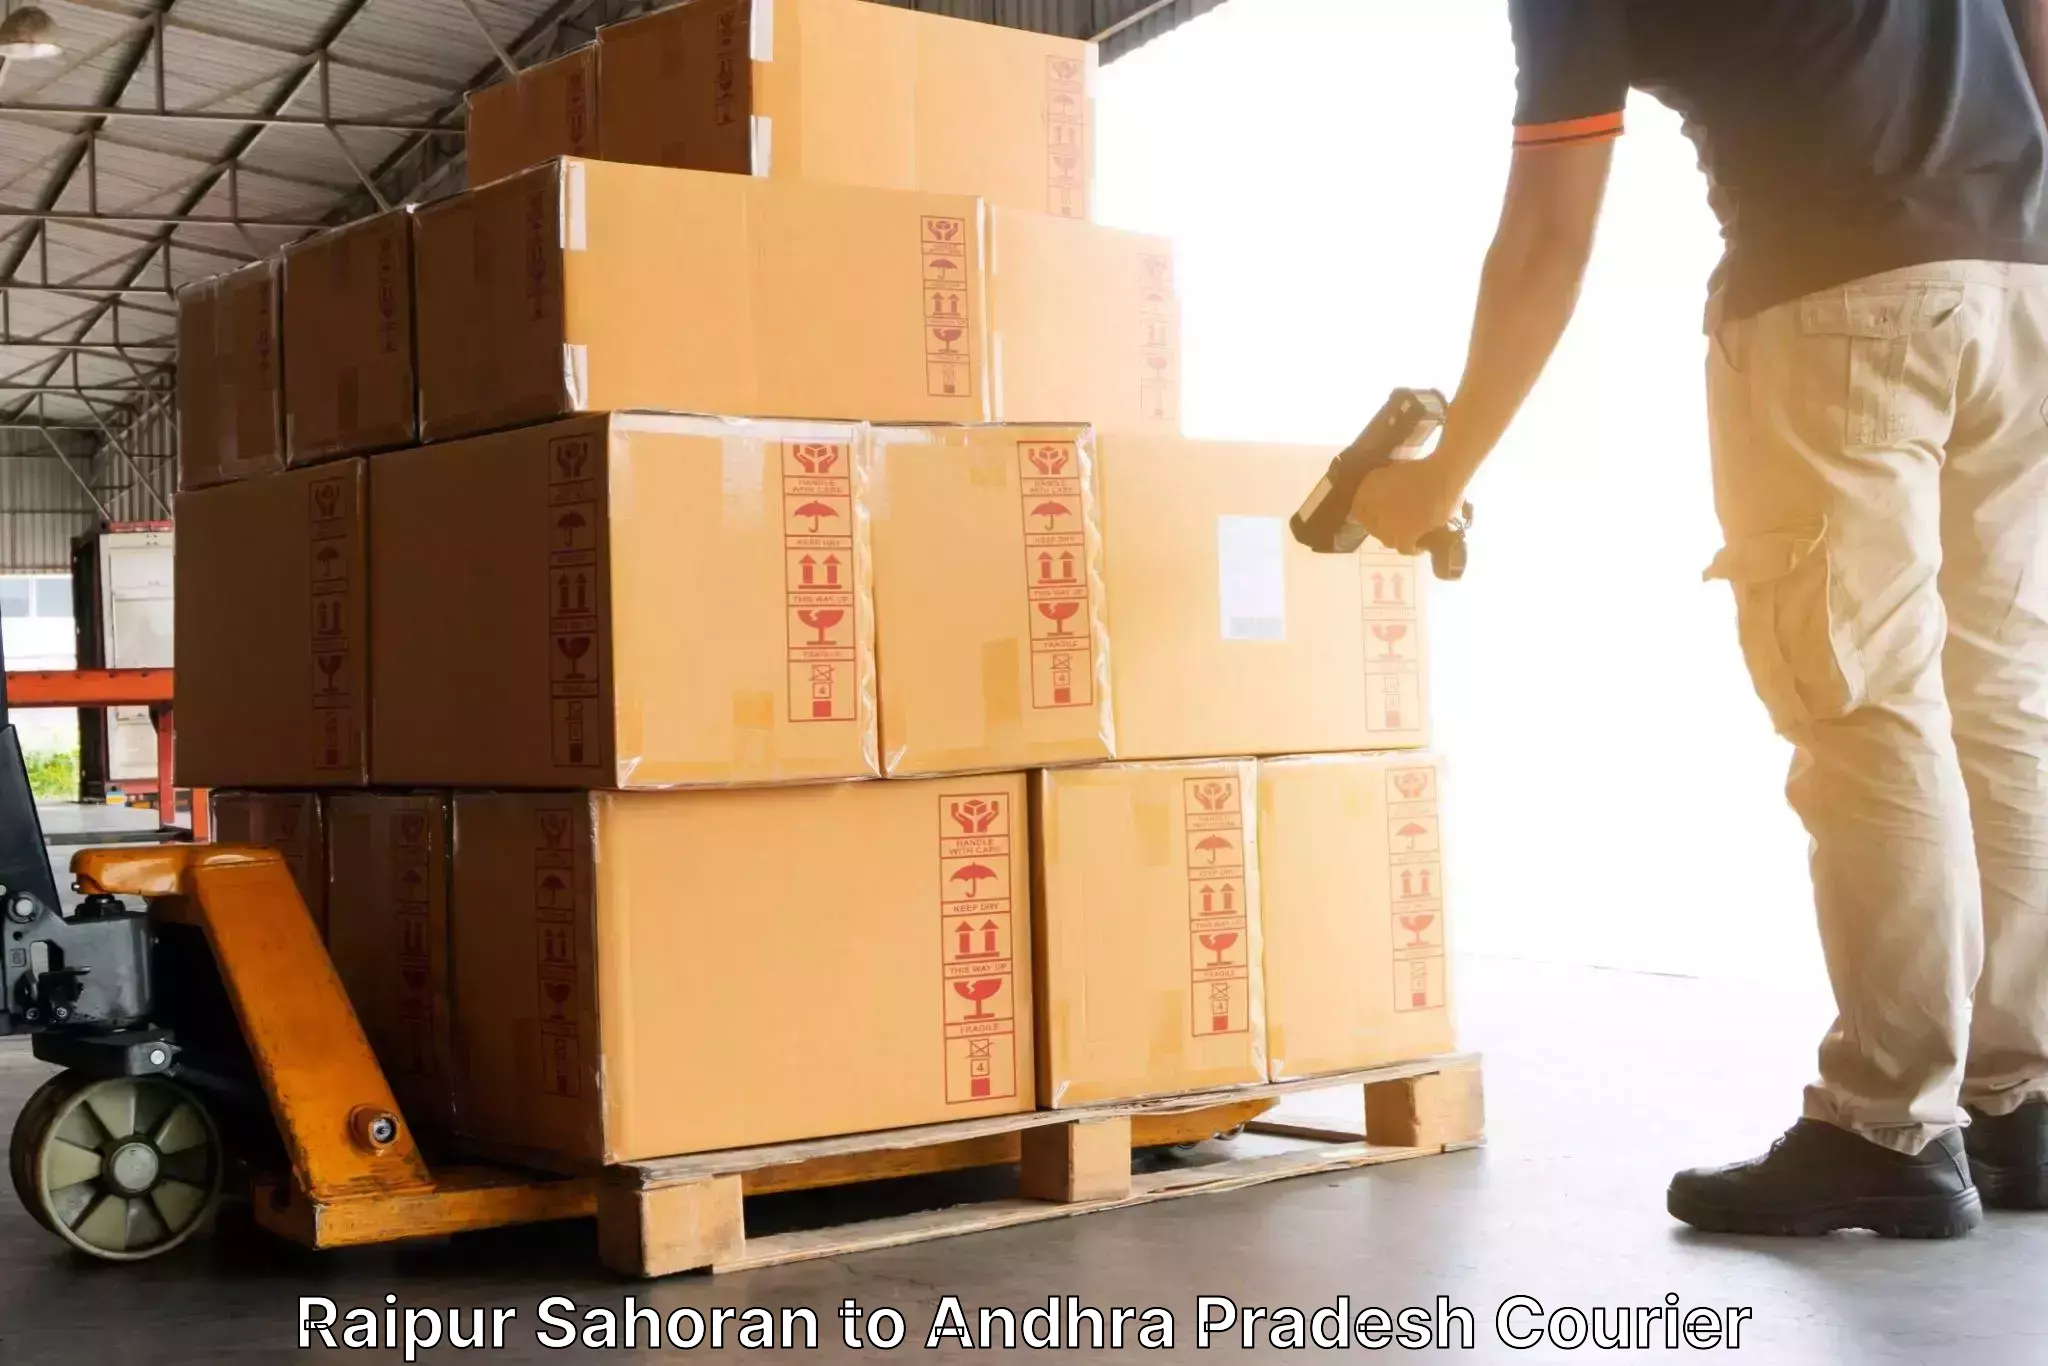 Express courier facilities Raipur Sahoran to Chodavaram